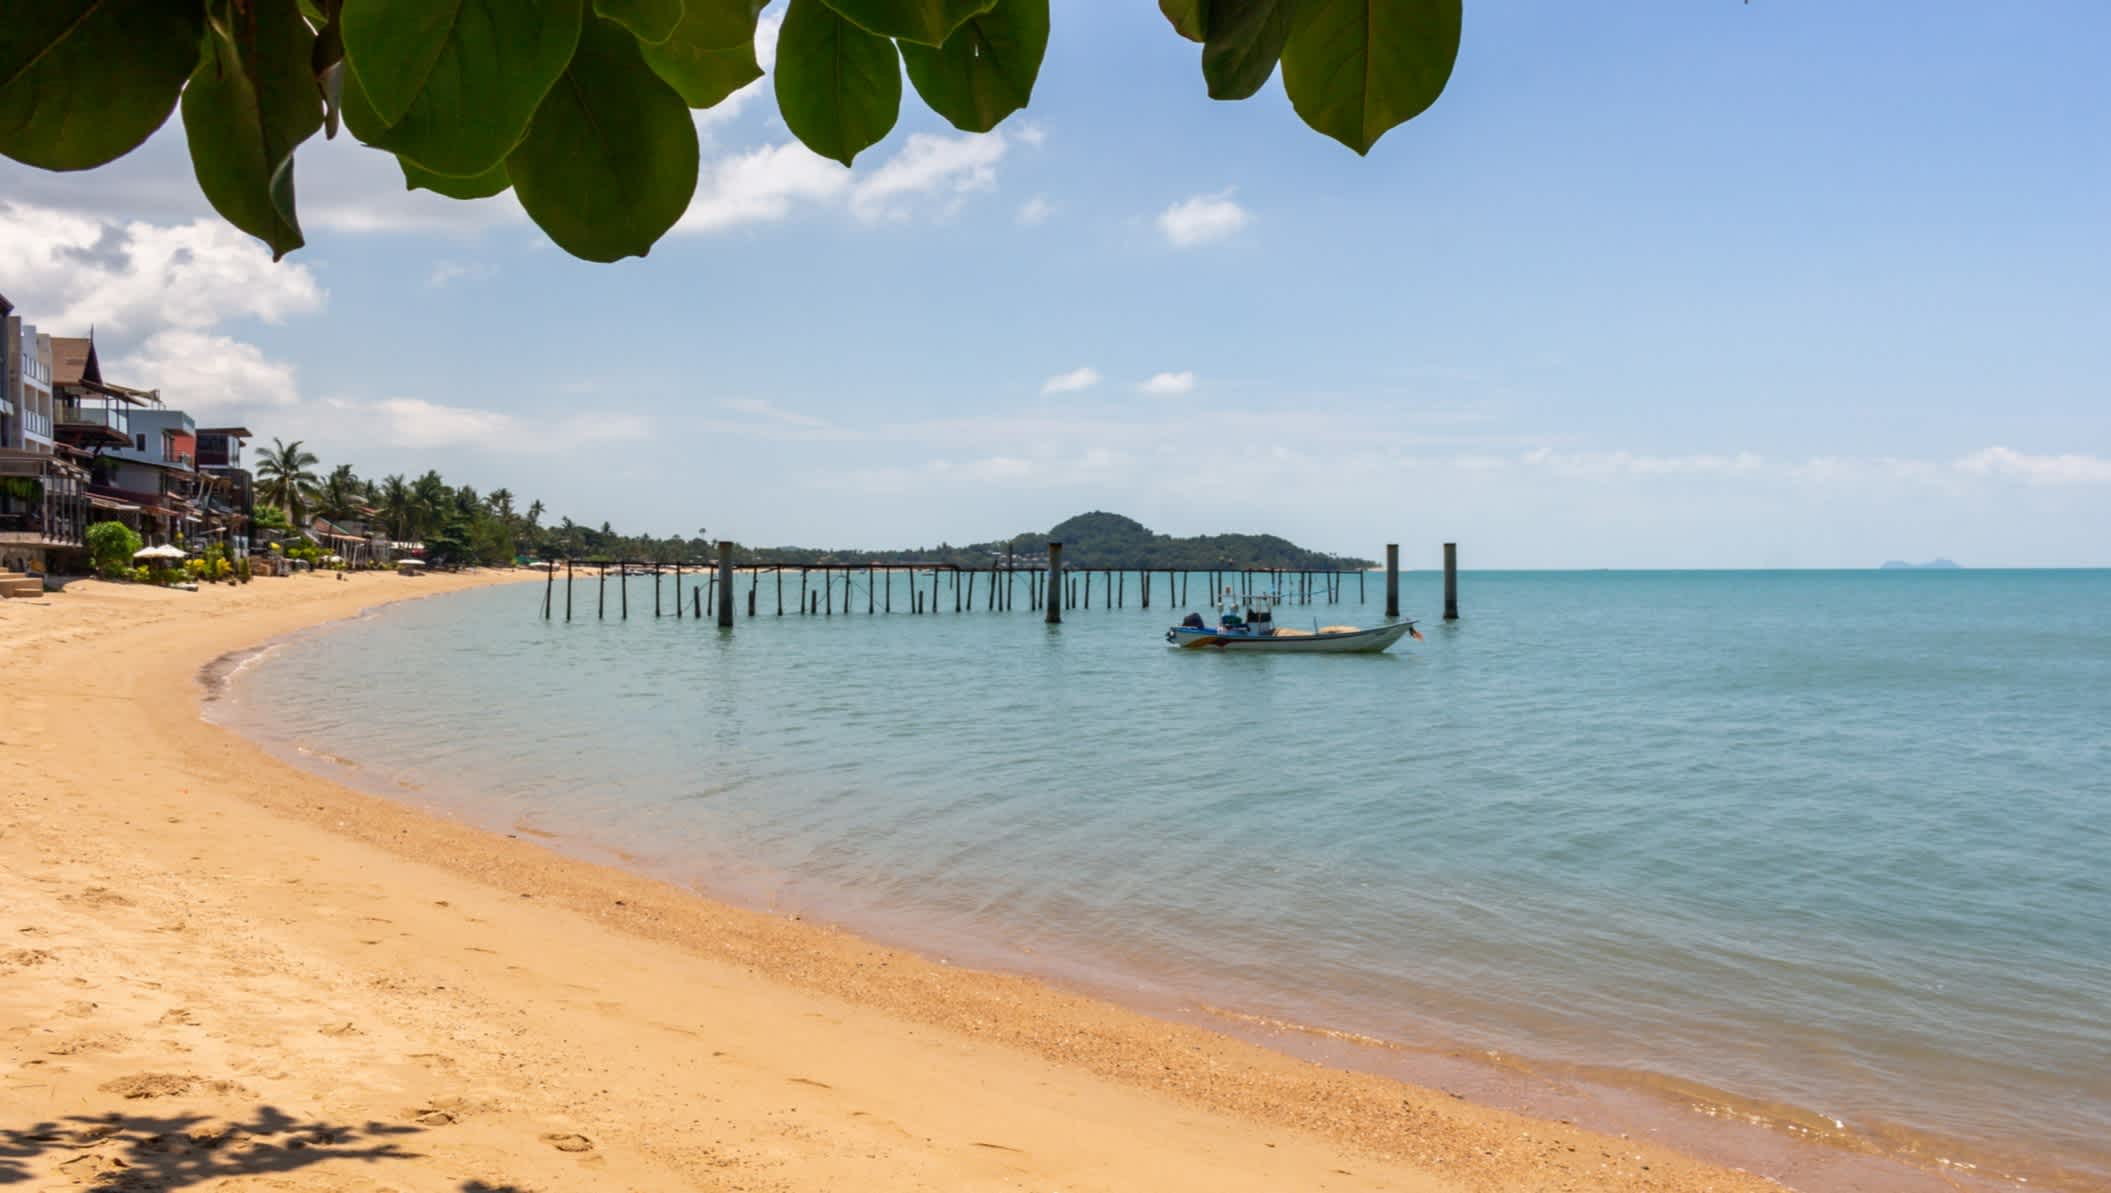 Der Strand im berühmten Fischerdorf auf der Insel Koh Samui, Thailand
